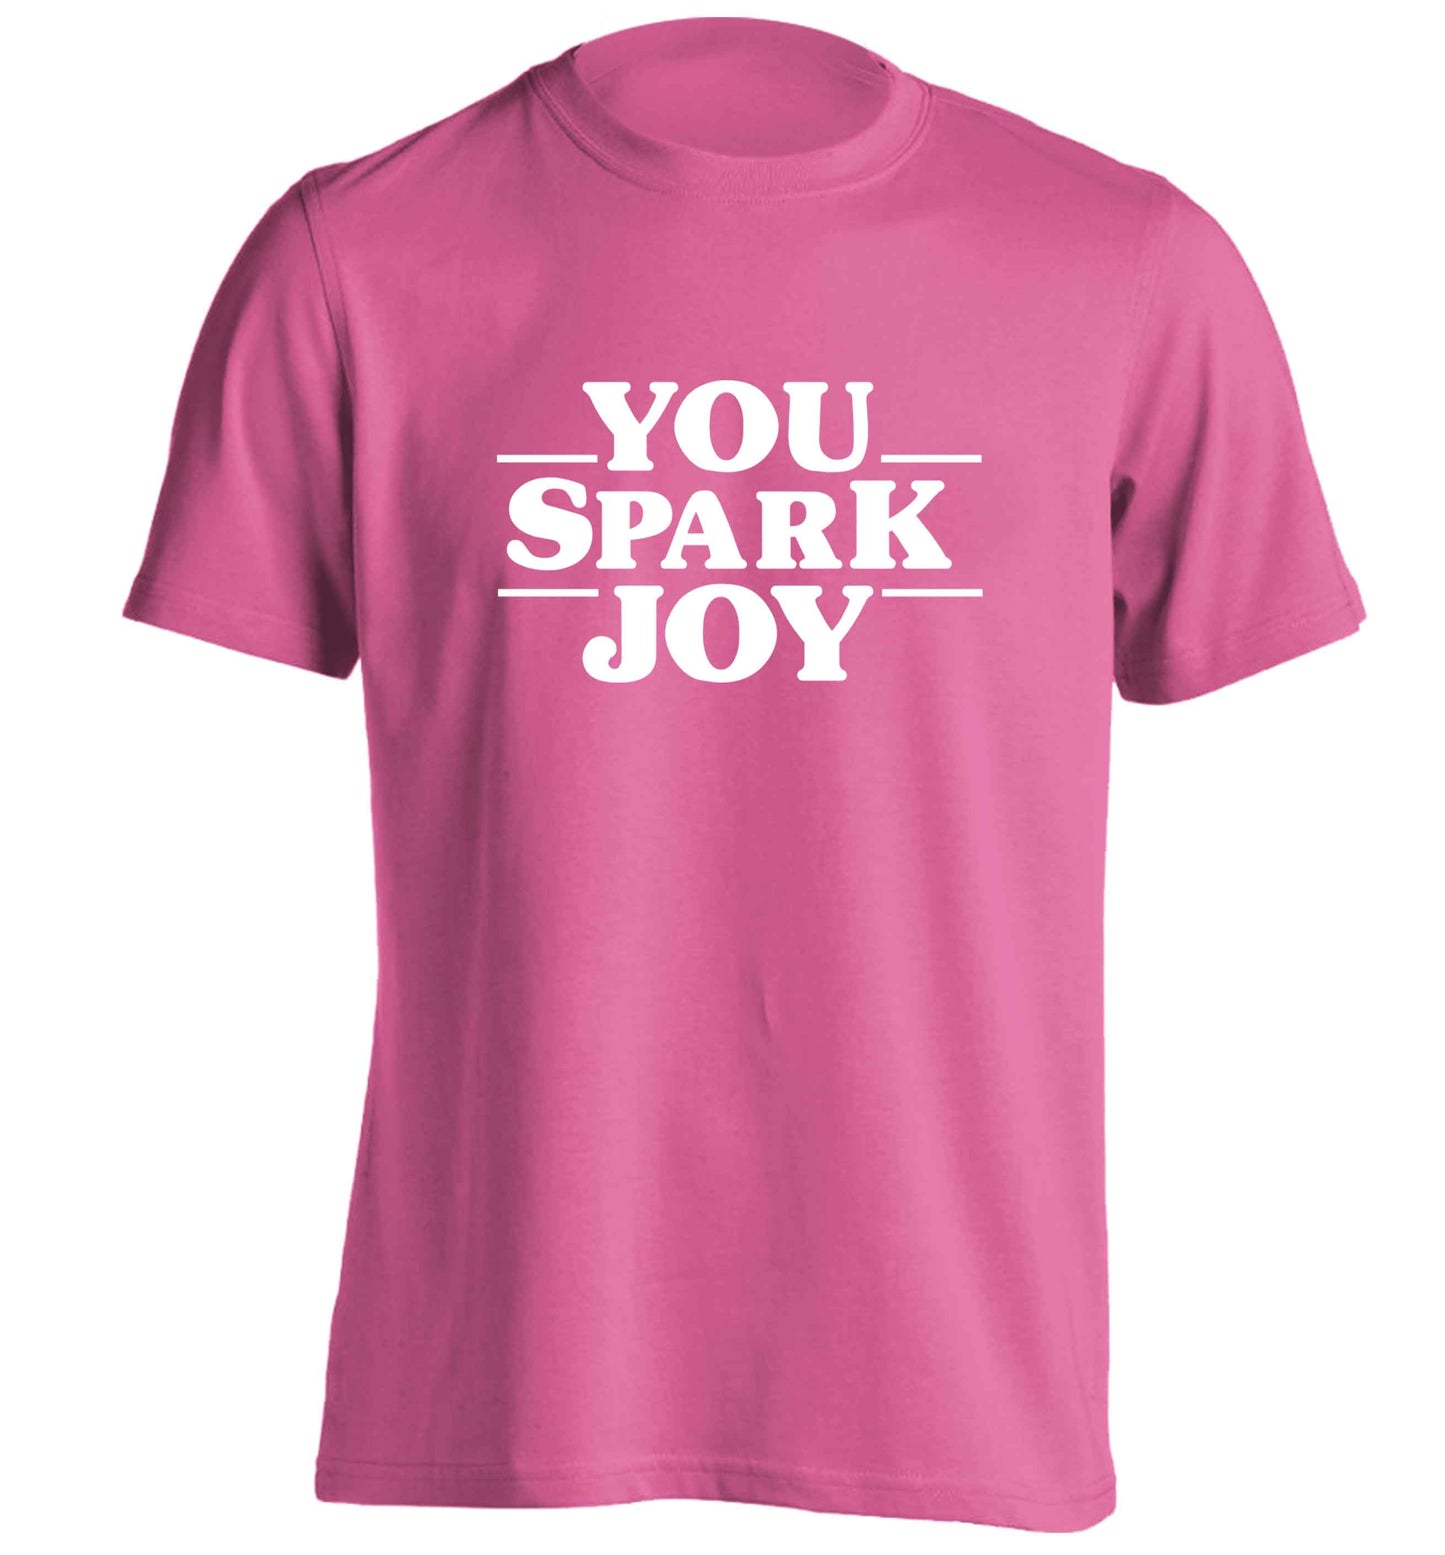 You spark joy adults unisex pink Tshirt 2XL